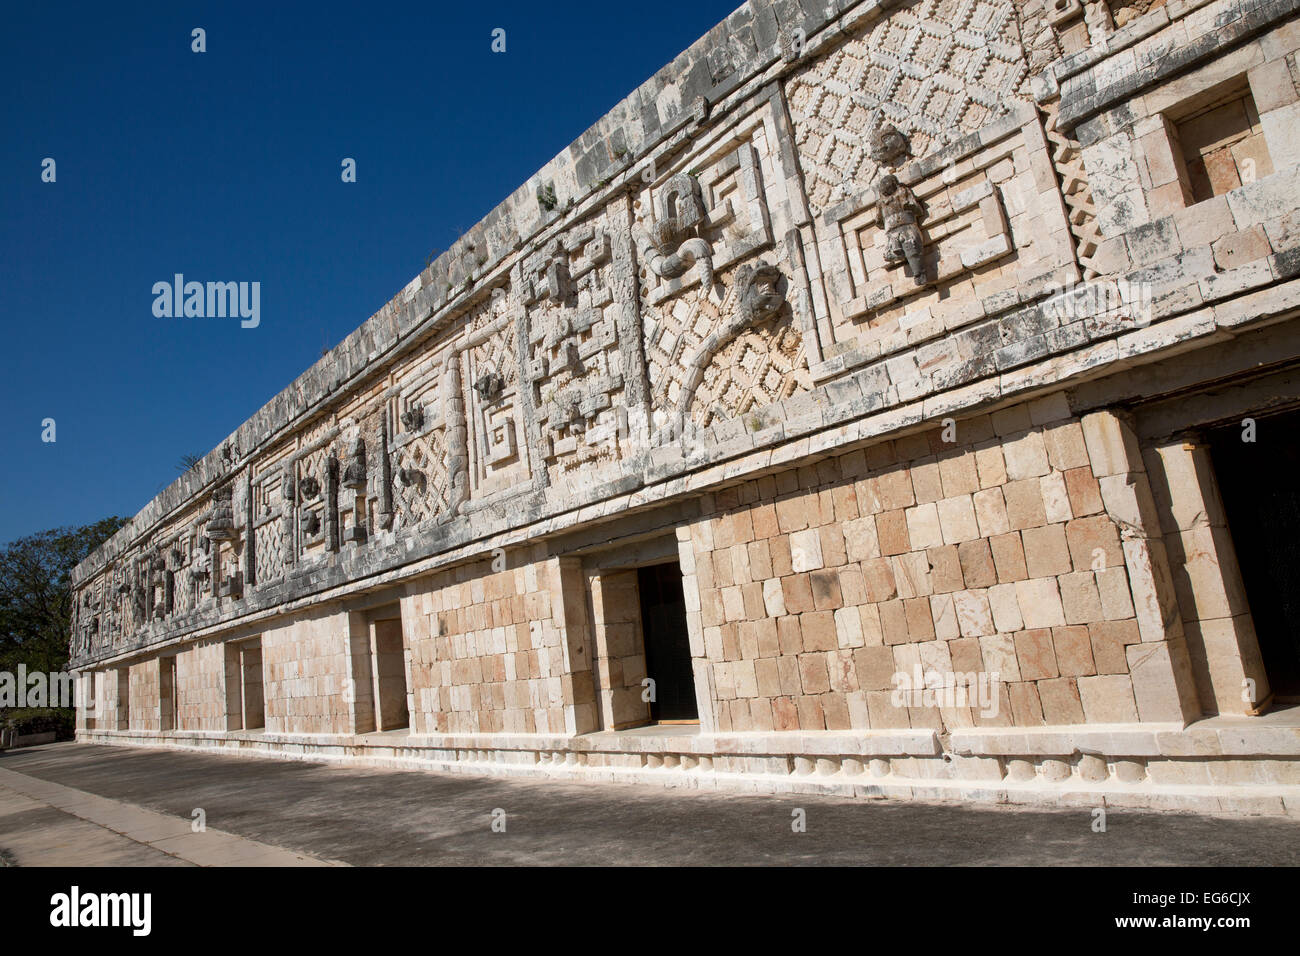 Ornamentada fachada, Nunnery Quadrangle, Uxmal, Yucatán, México. Foto de stock